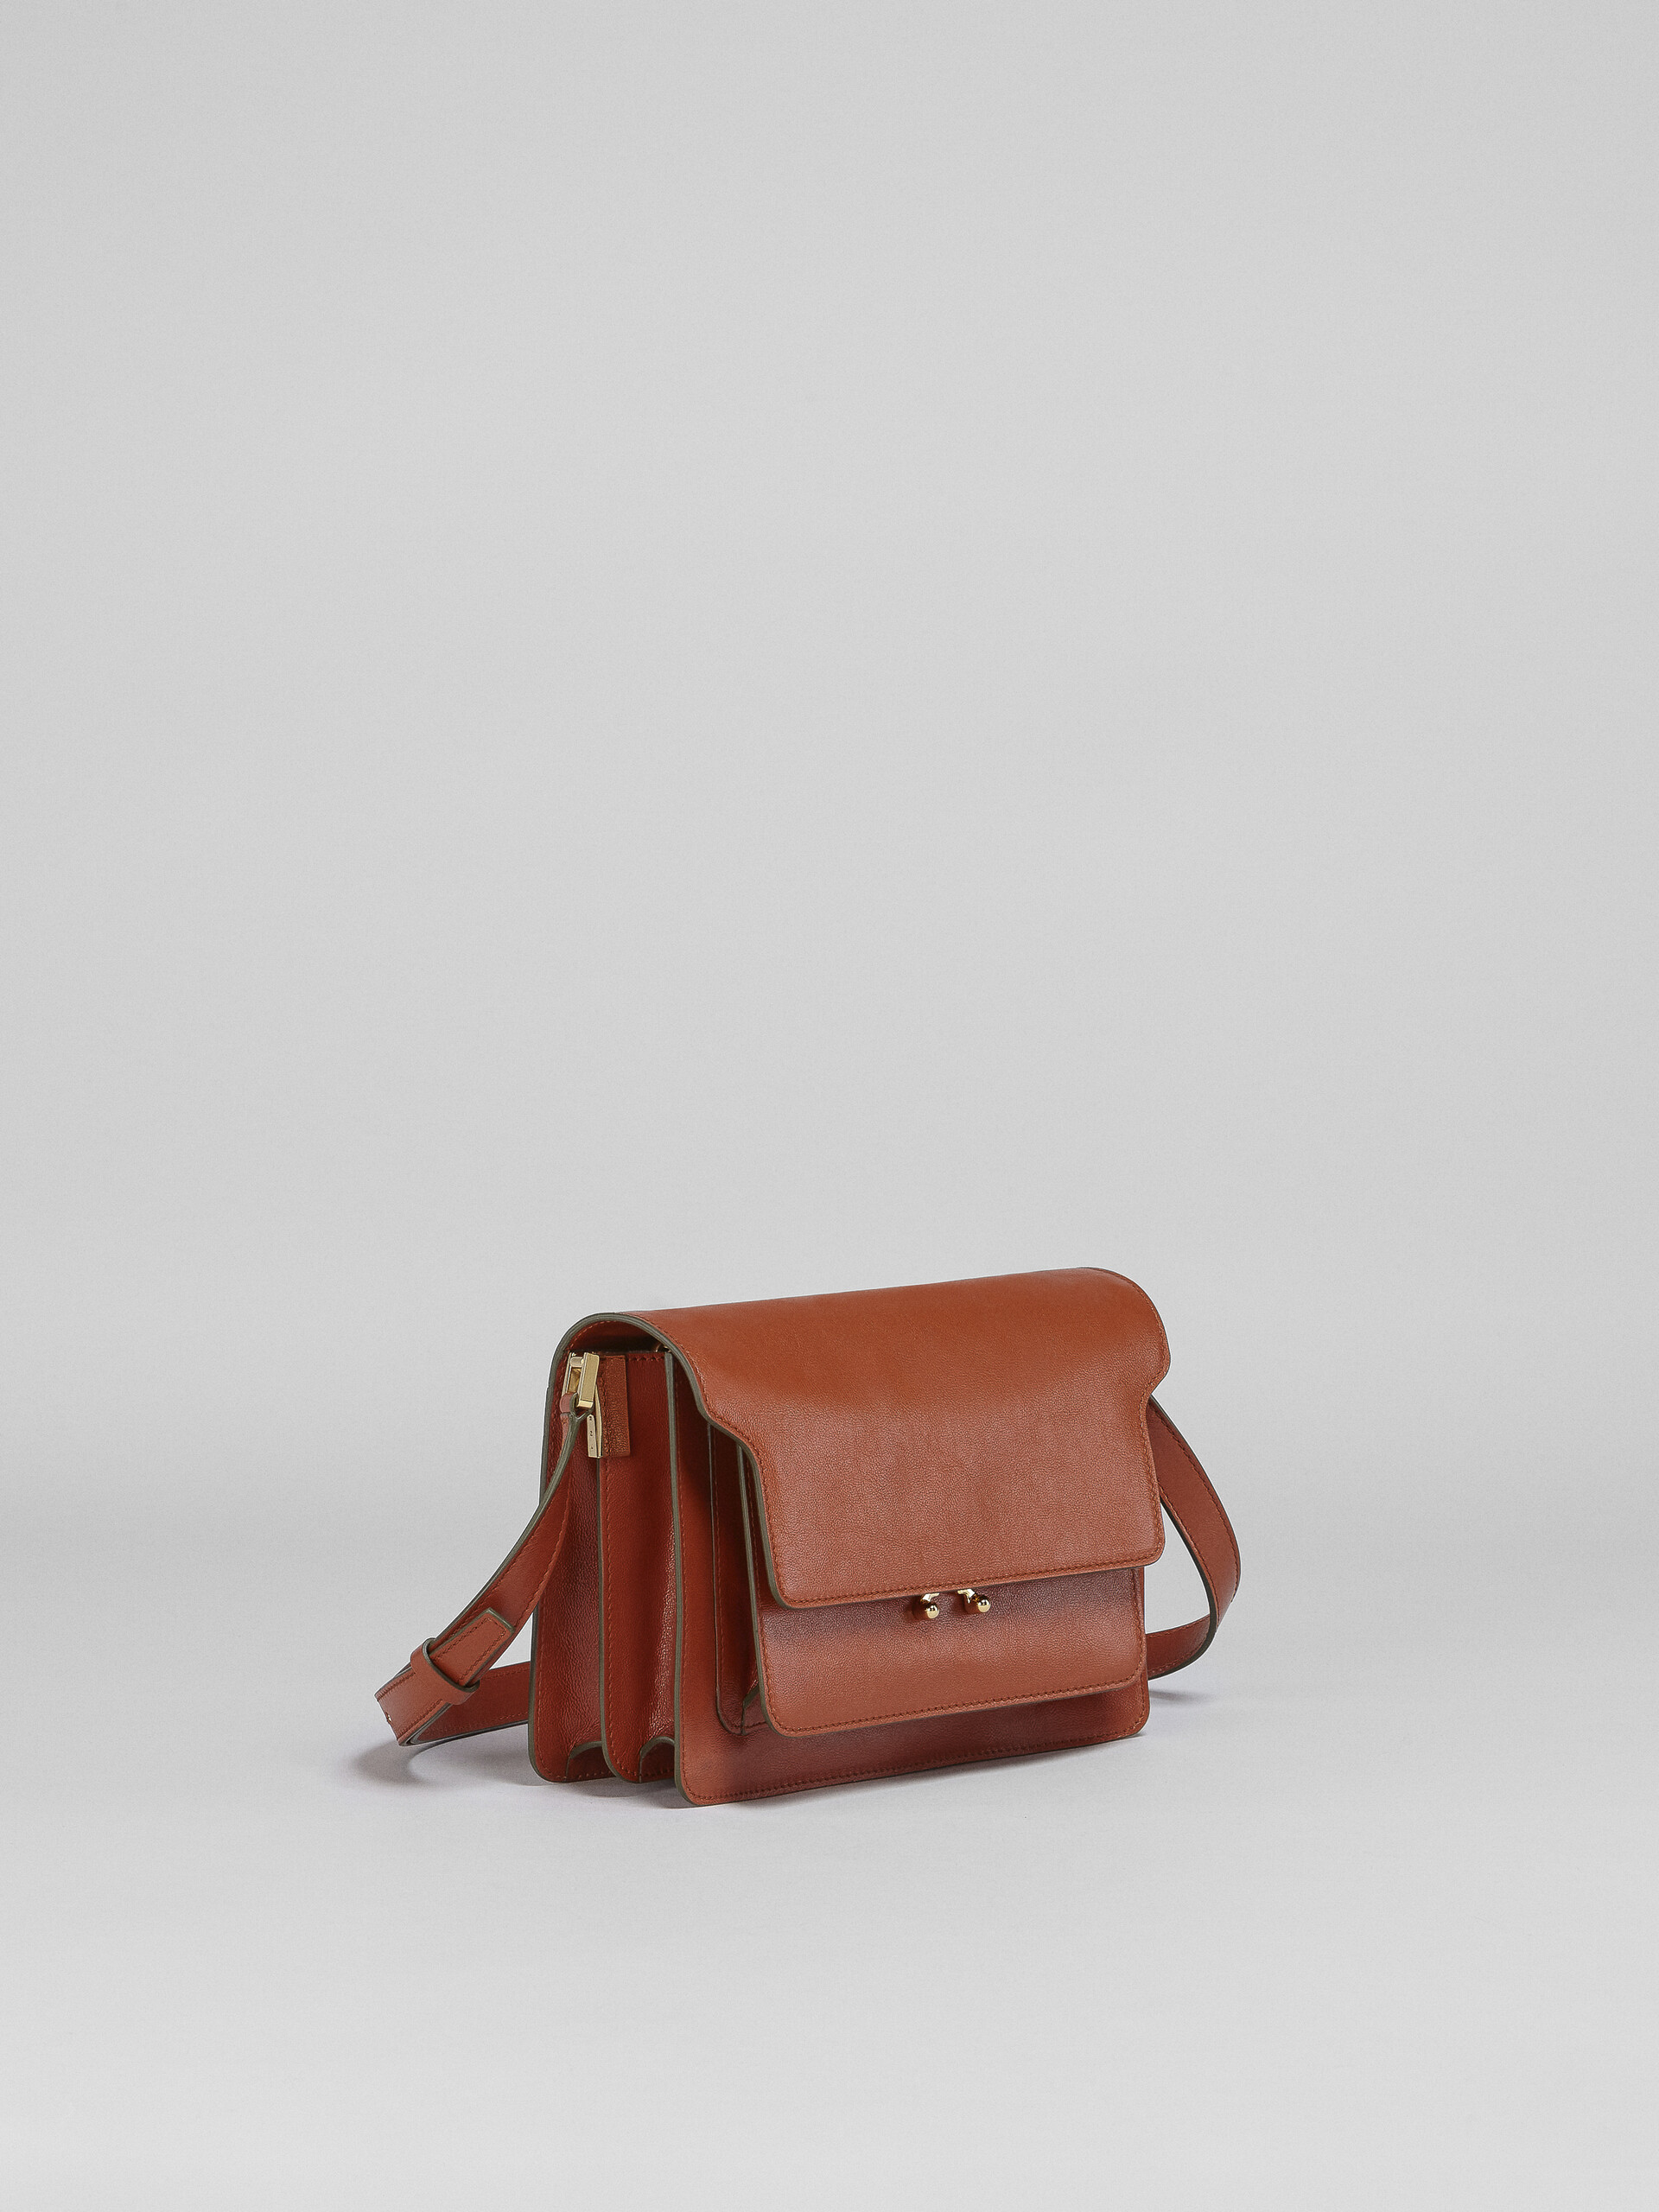 TRUNK SOFT medium bag in brown leather - Shoulder Bag - Image 6